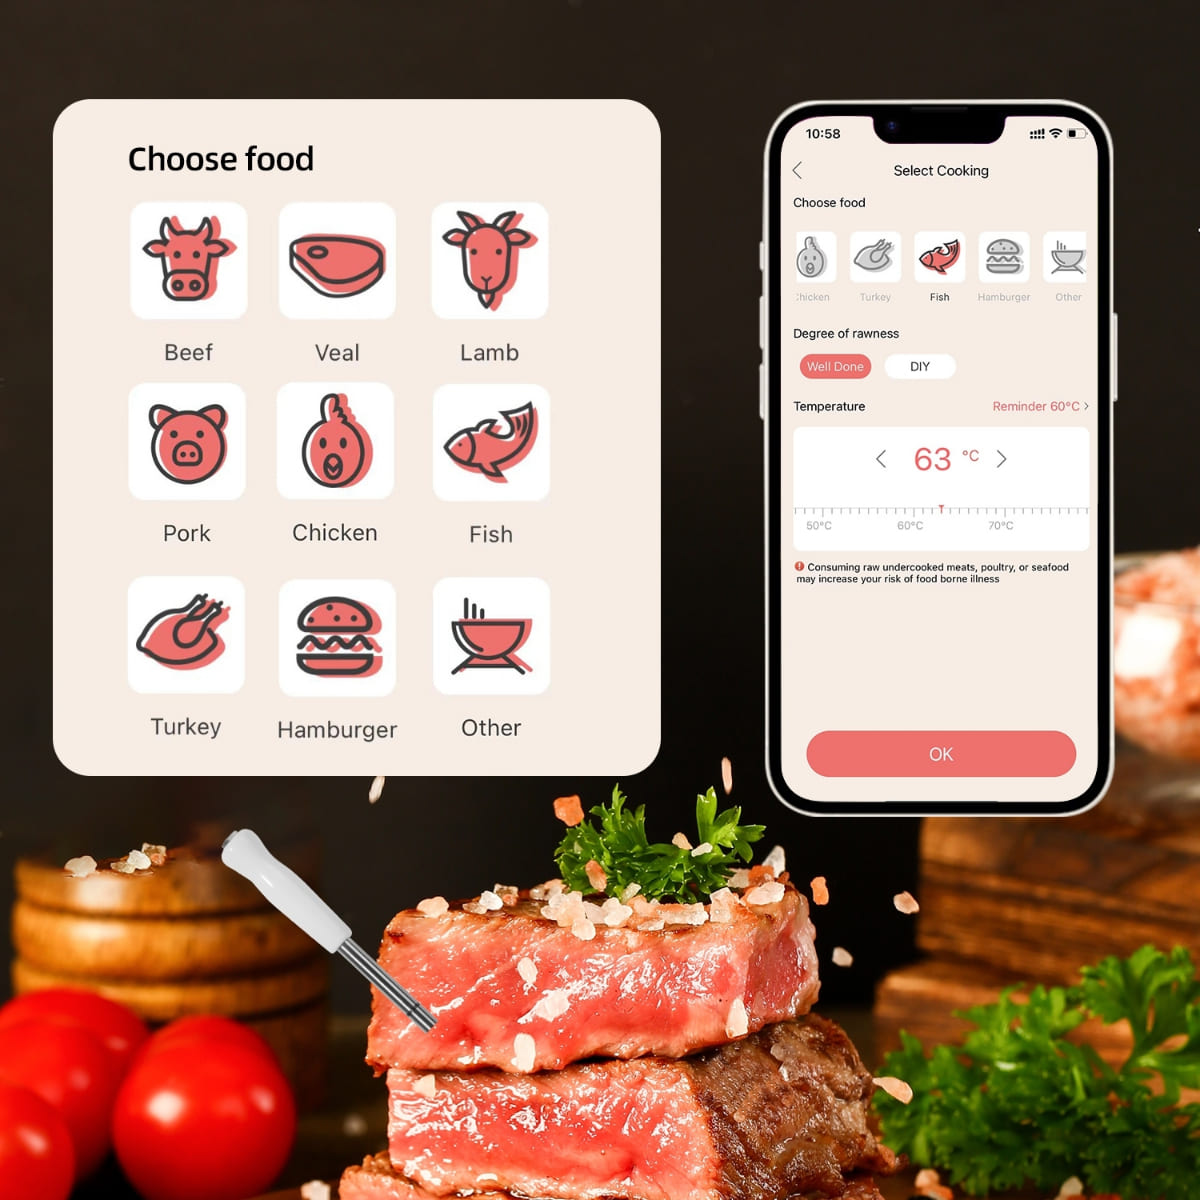 Termometro per grigliare carne - supporto bluetooth fino a 100 m (app mobile)